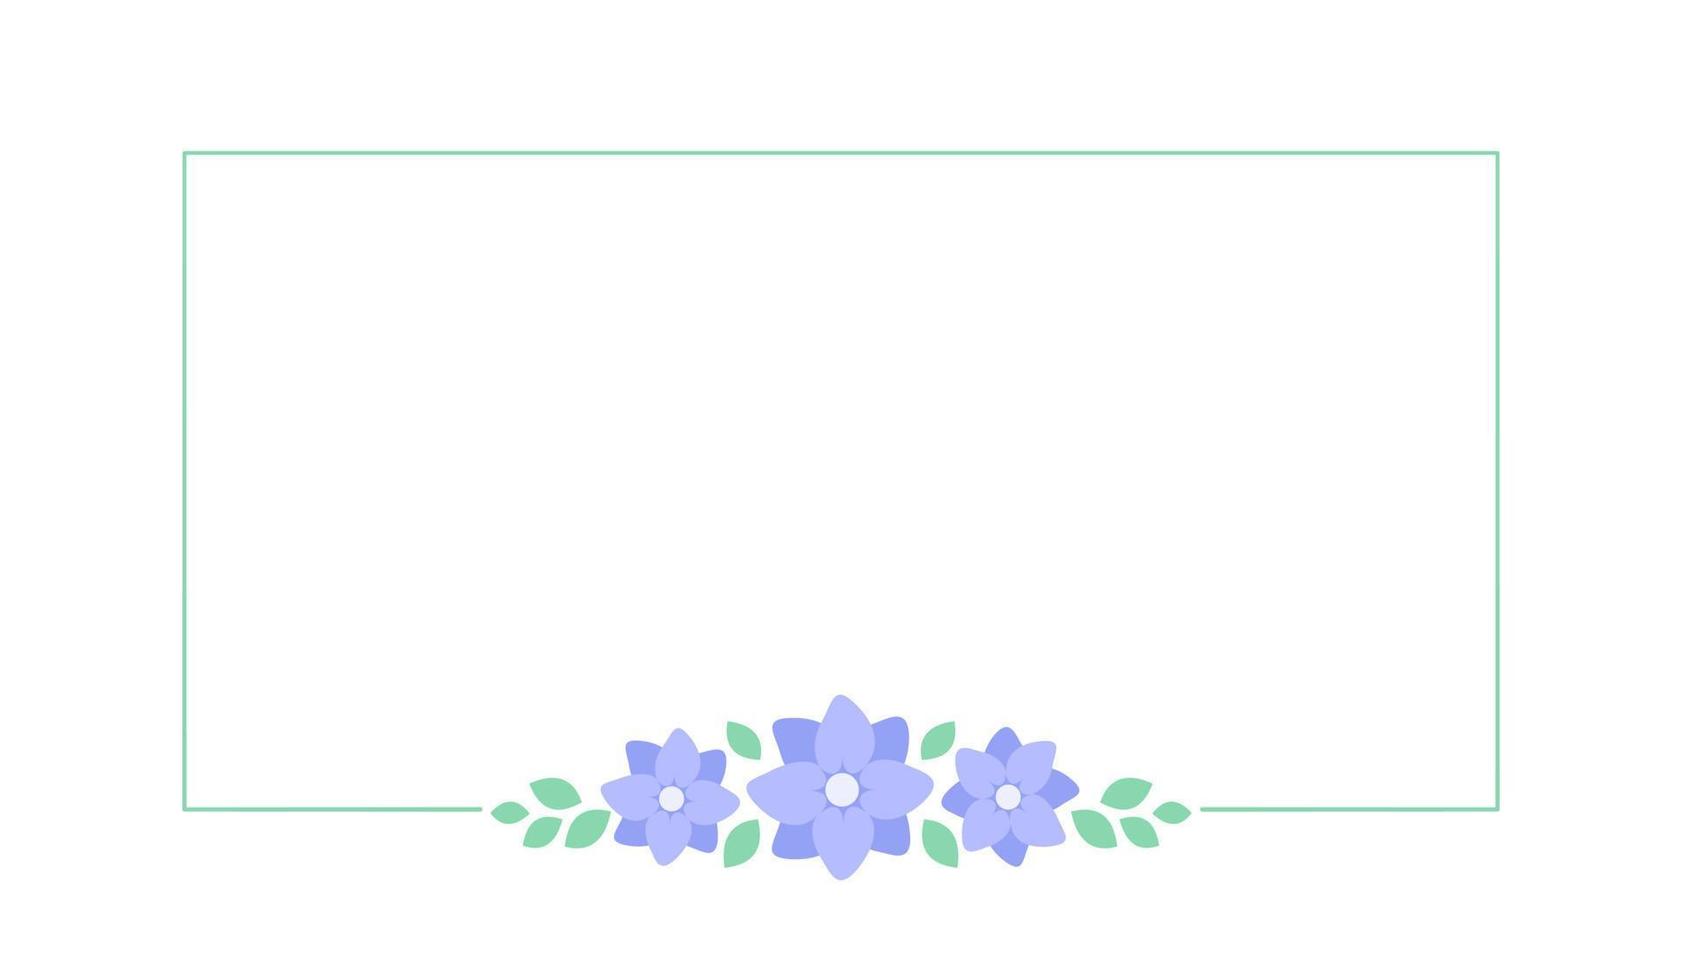 rektangel lavendel- blommig ram. botanisk blomma gräns vektor illustration. enkel elegant romantisk stil för bröllop evenemang, tecken, logotyp, etiketter, social media inlägg, etc.